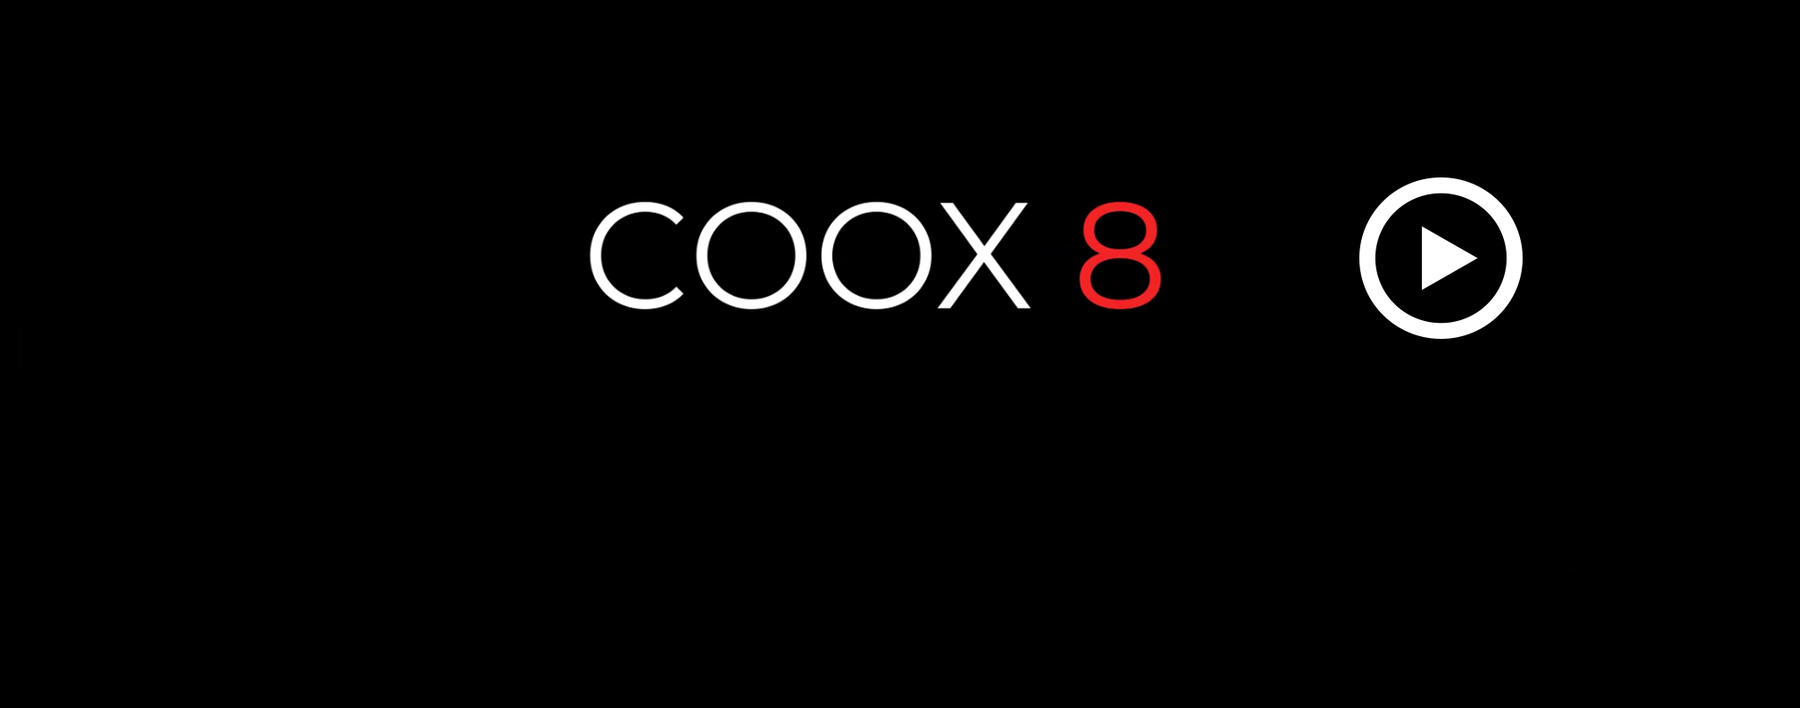 1024-coox